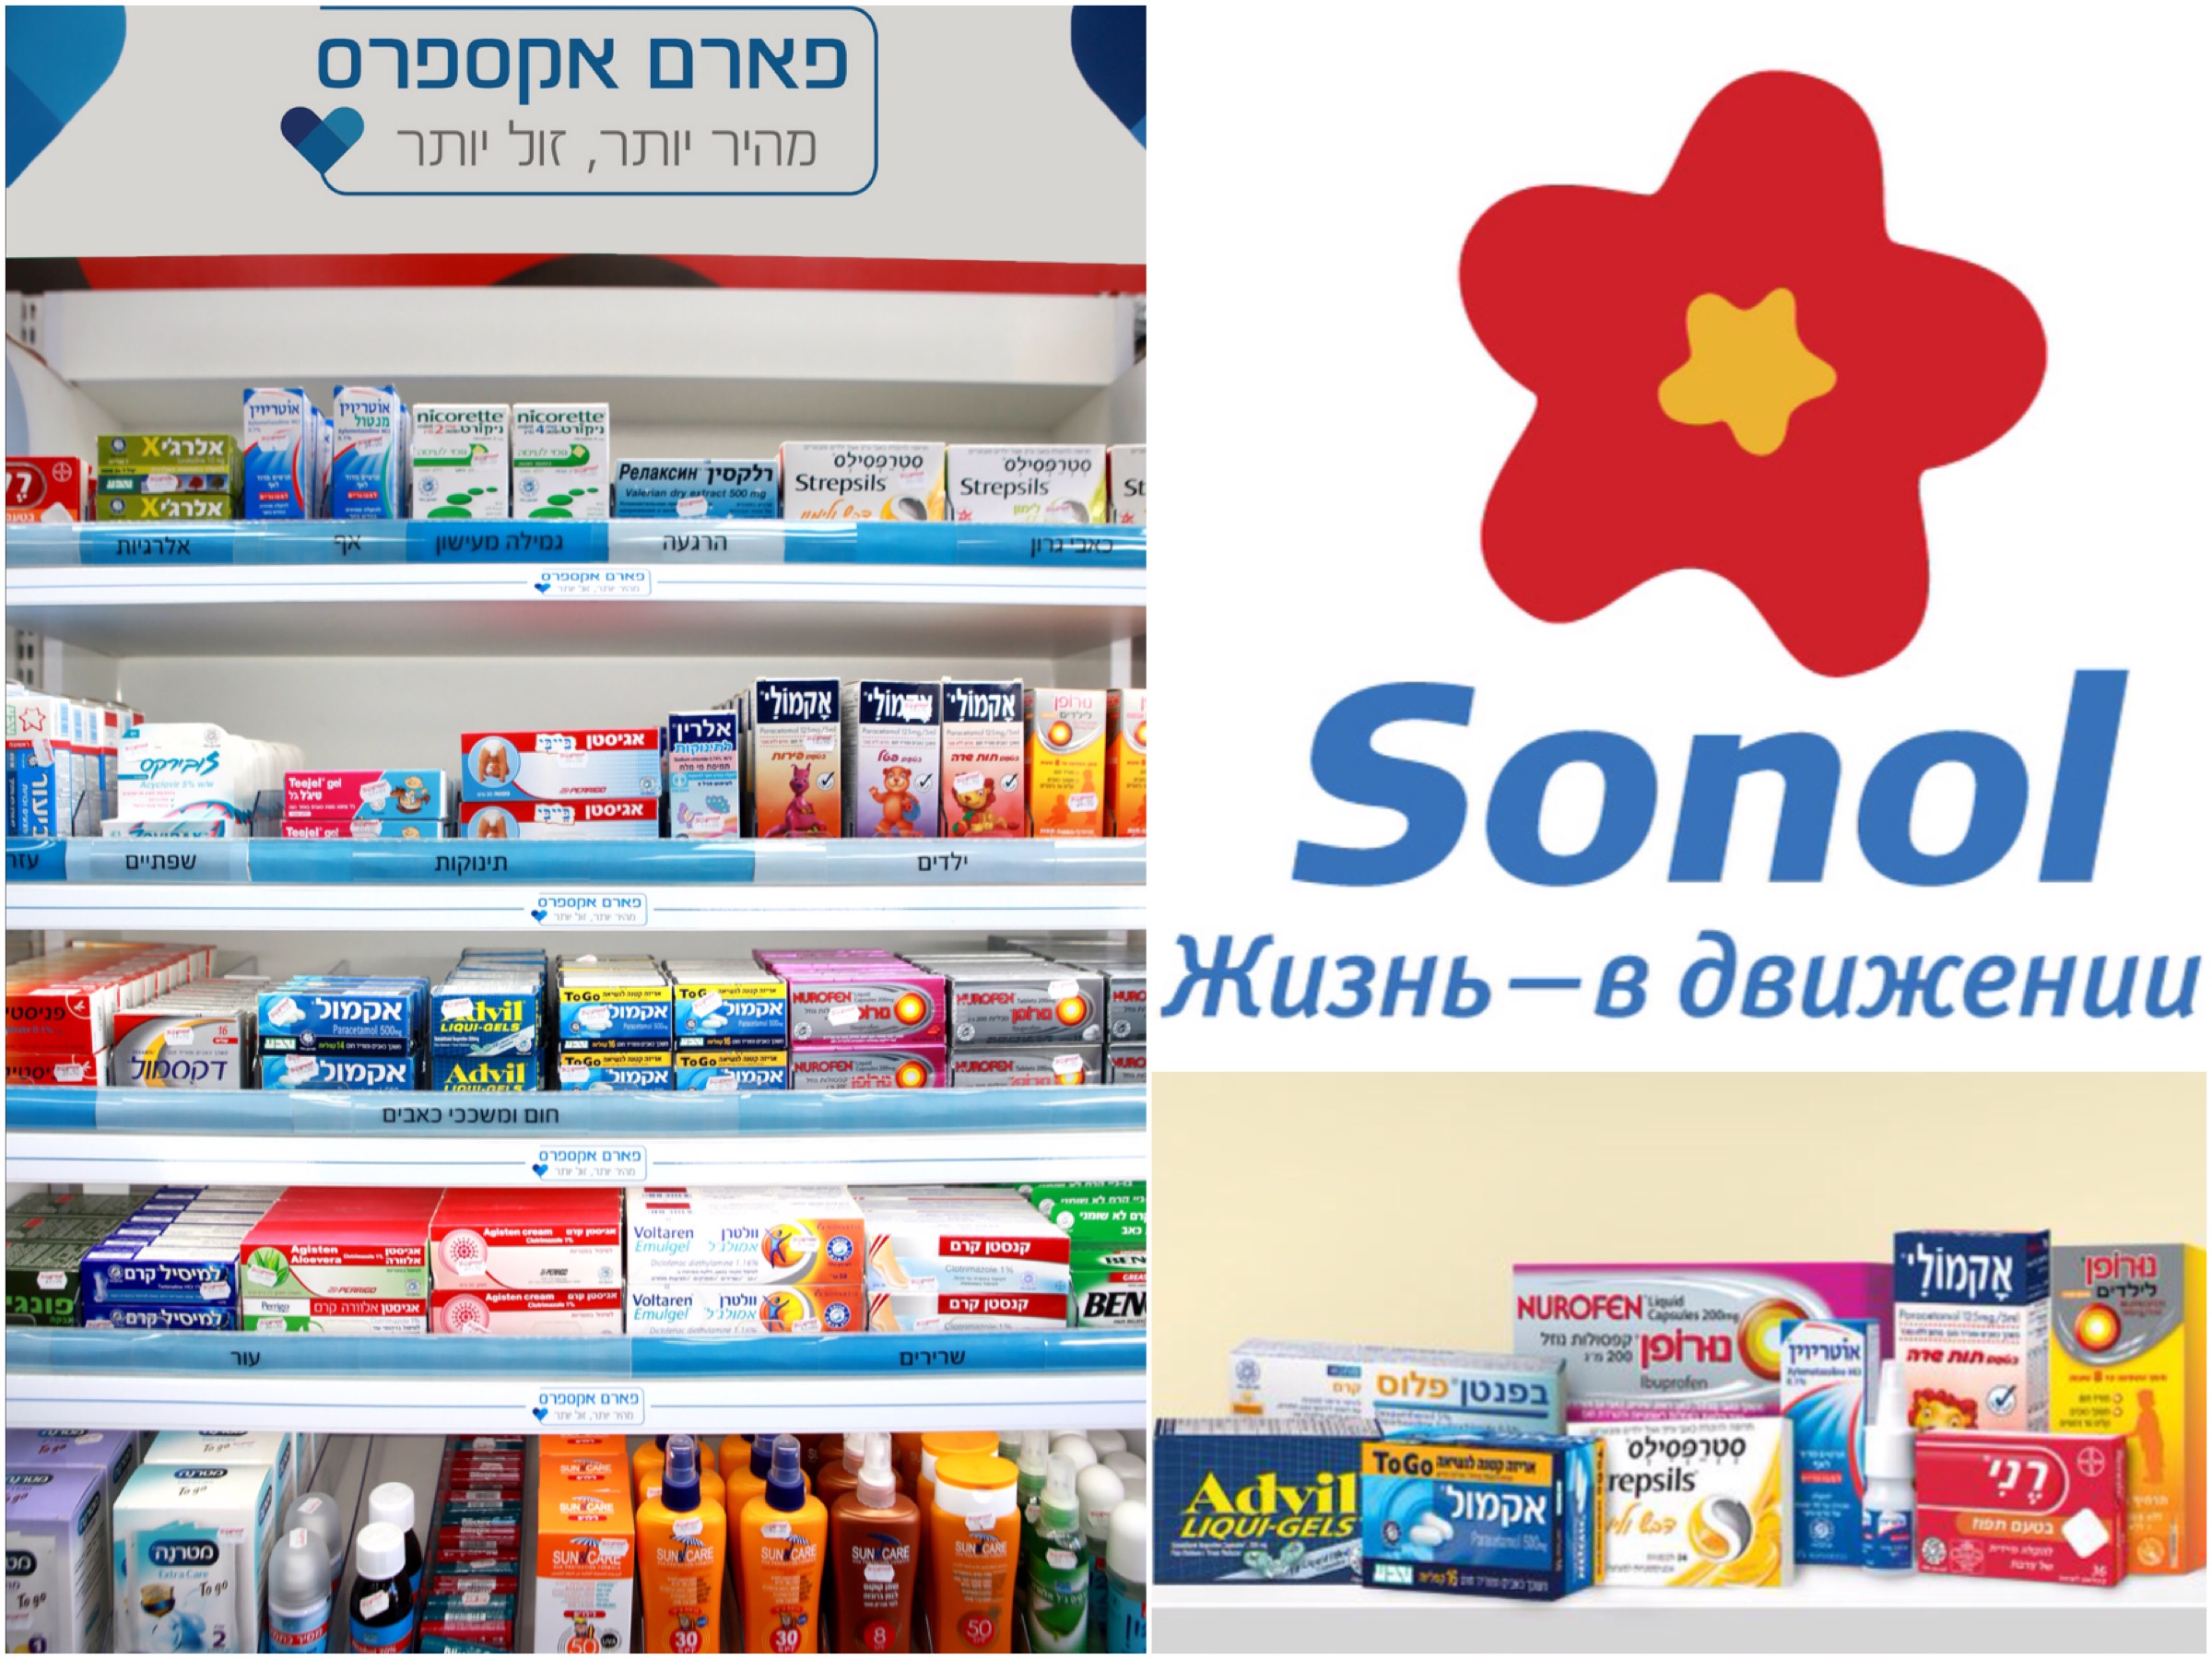 Последнее новшество компании Sonol – фармацевтические средства, которые отпускаются без рецепта